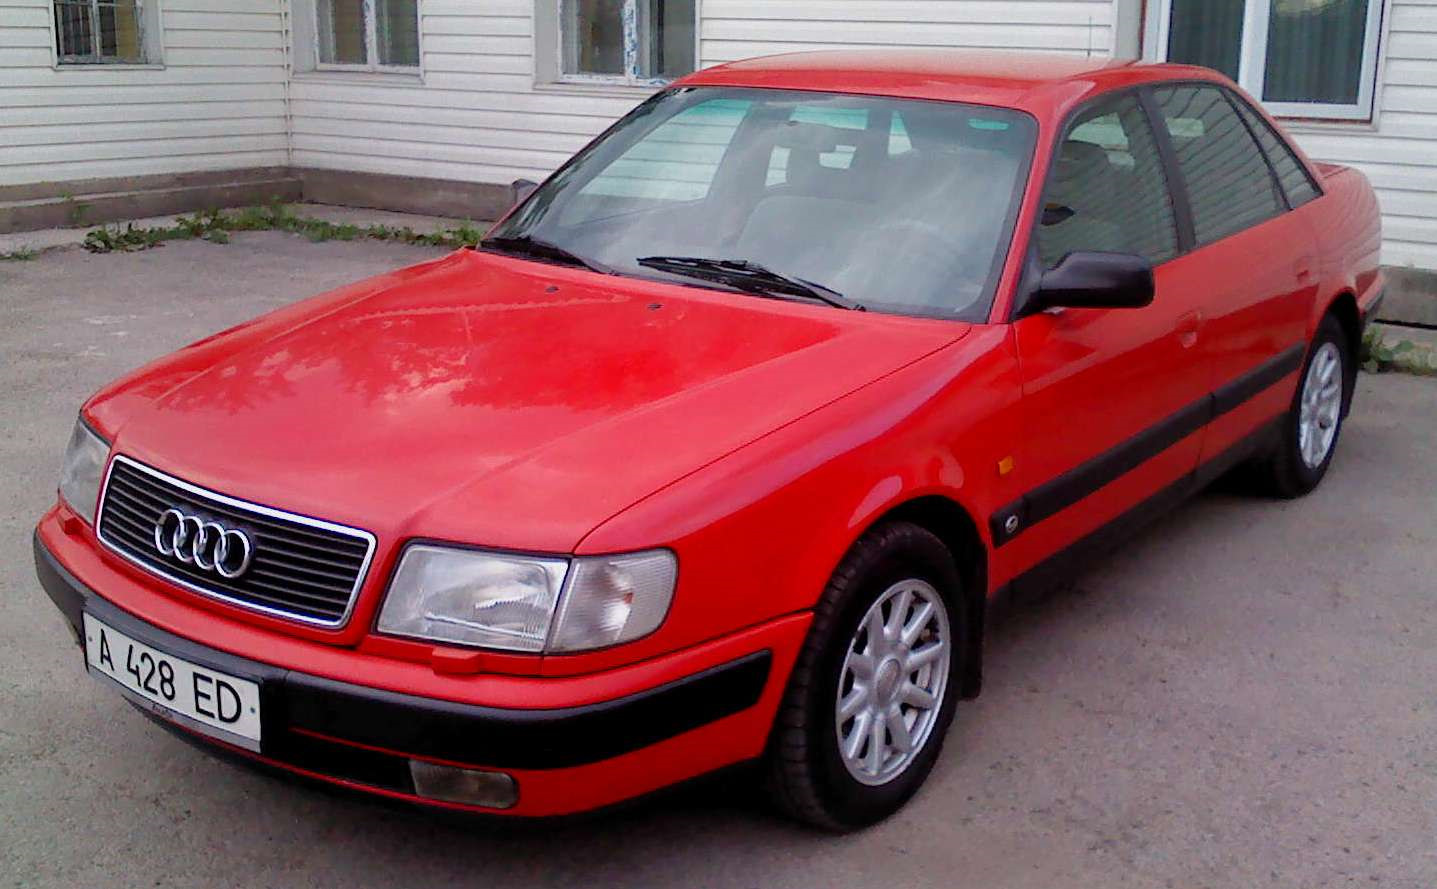 Купить ауди гродно. Audi 100 c4 Red. Ауди 100 с4. Ауди 100 с4 красная. Ауди 100 в 45 кузове красная.